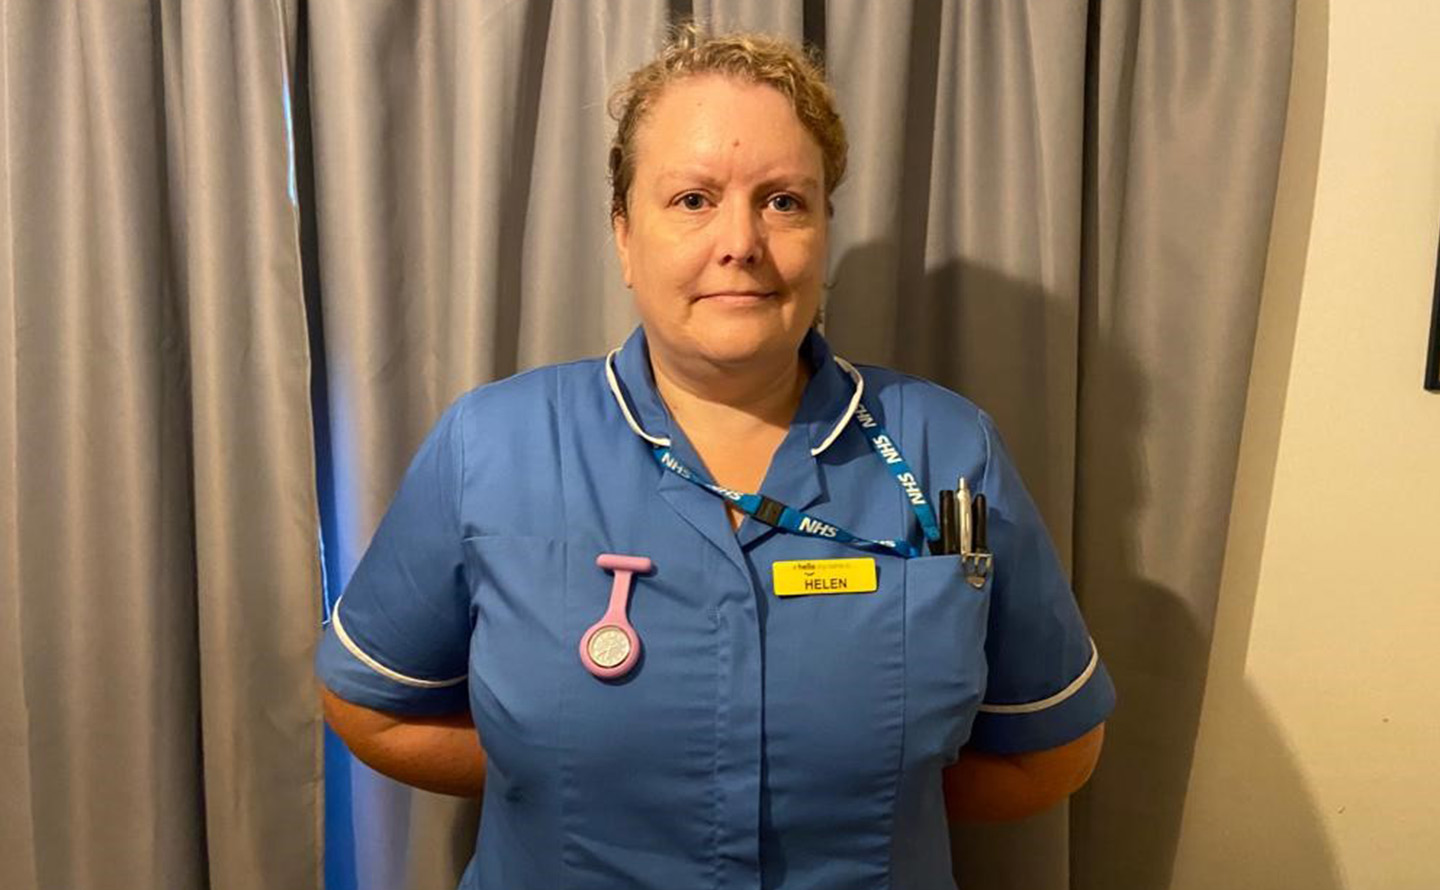 Helen Scholes in nursing uniform